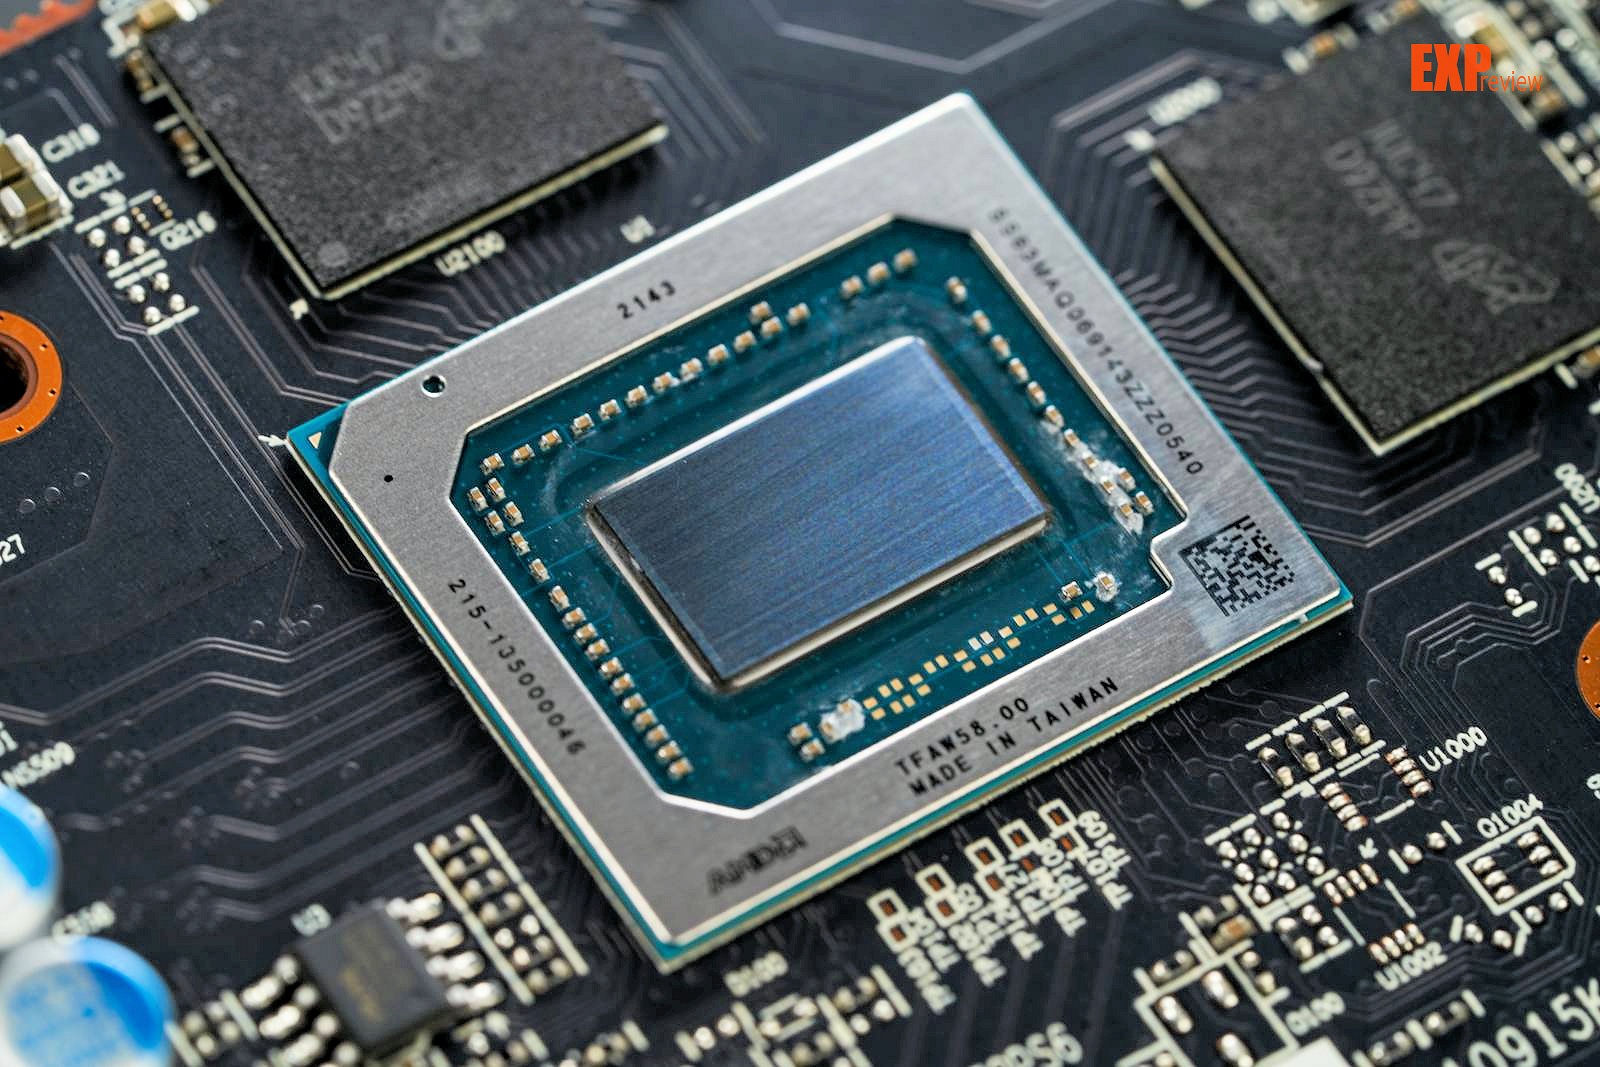 Na rynku debiutuje nowa karta AMD Radeon. Jest naprawdę tania